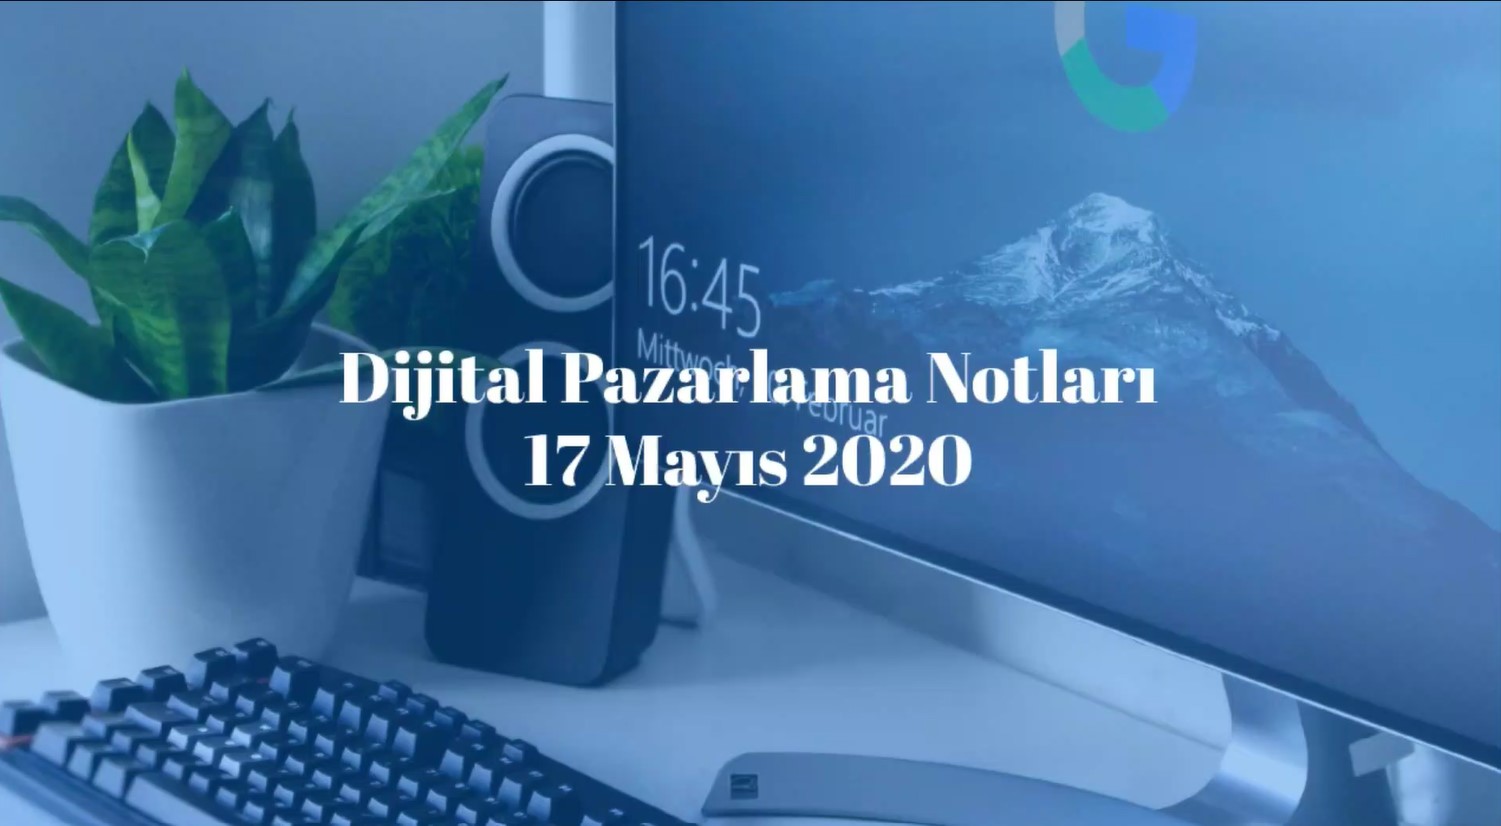 Dijital Pazarlama Notları - Mert Erkal - 17.05.2020